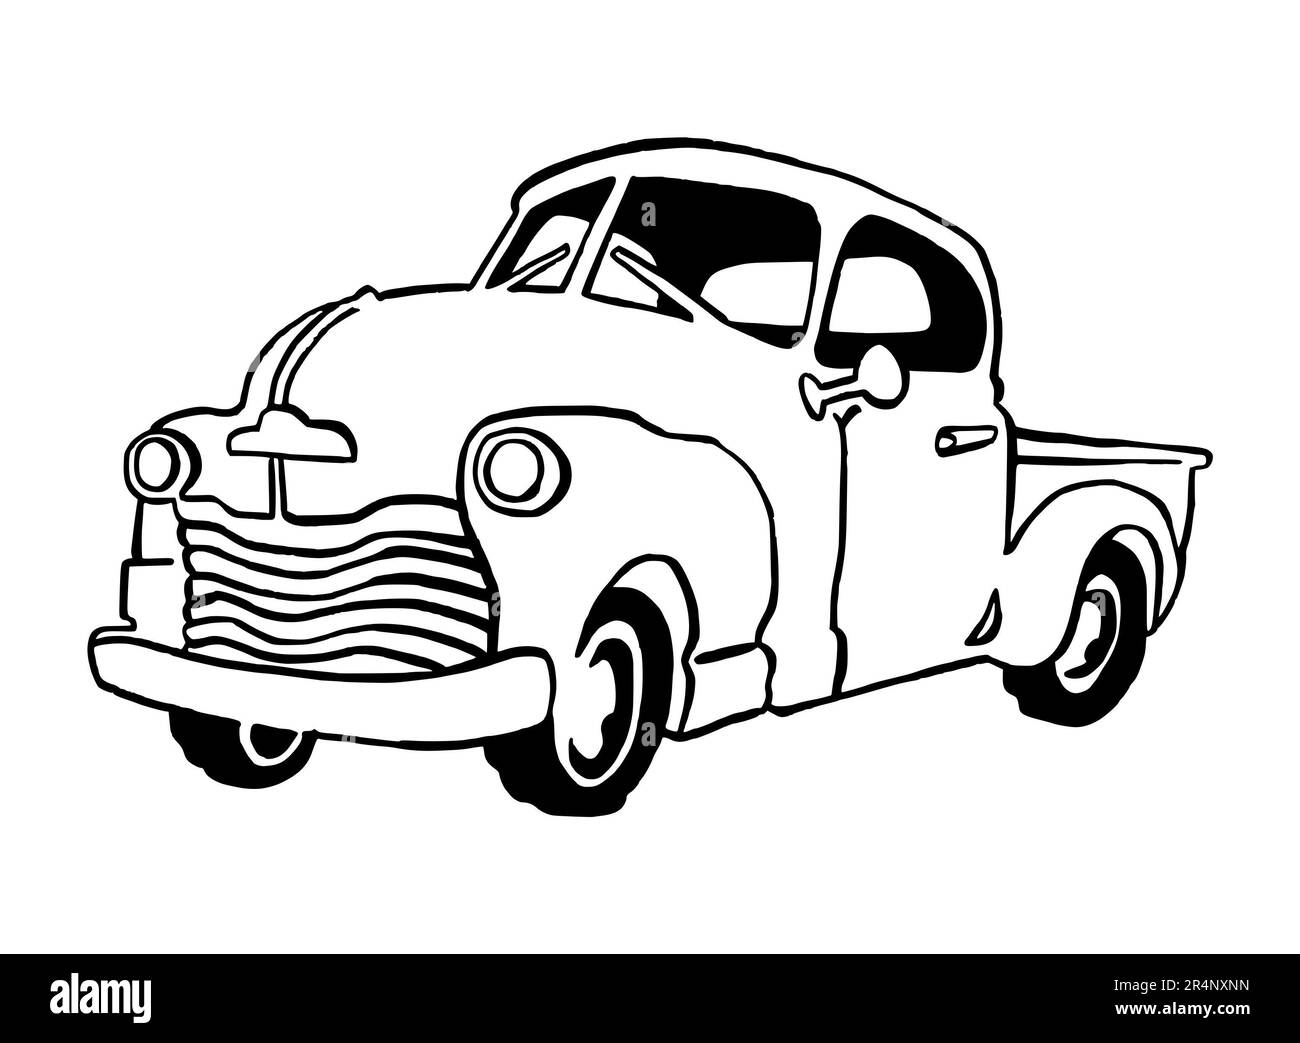 Disegno a mano Illustrazione di un'automobile retrò, americana, misura completa, isolata su uno sfondo bianco, con l'arte di linea nera Foto Stock